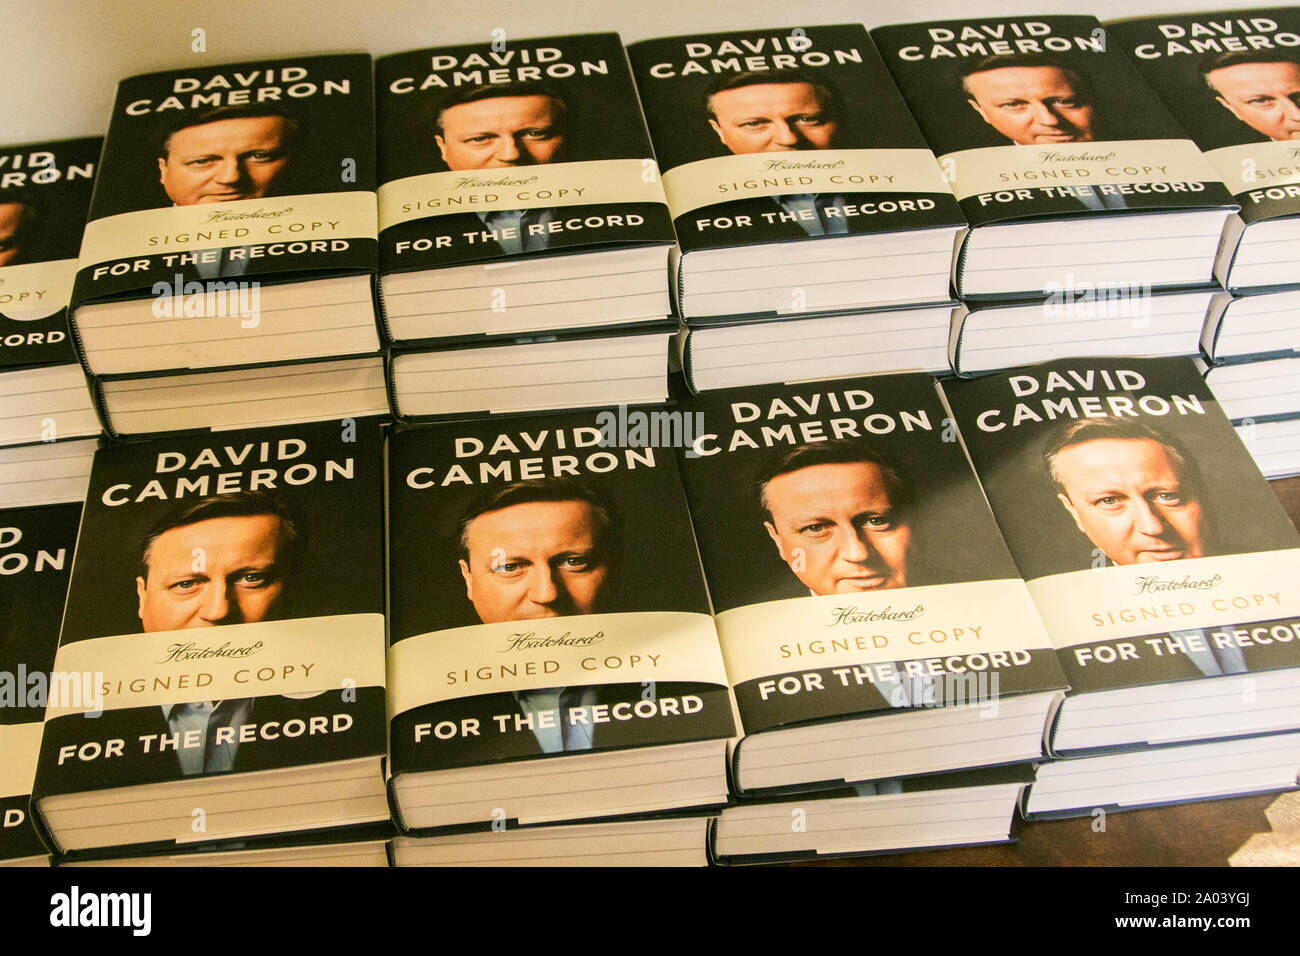 Copias firmadas del libro autobiográfico ' para el registro" por el ex Primer Ministro Británico David Cameron en la librería Hatchards en Piccadilly, Londres. Foto de stock